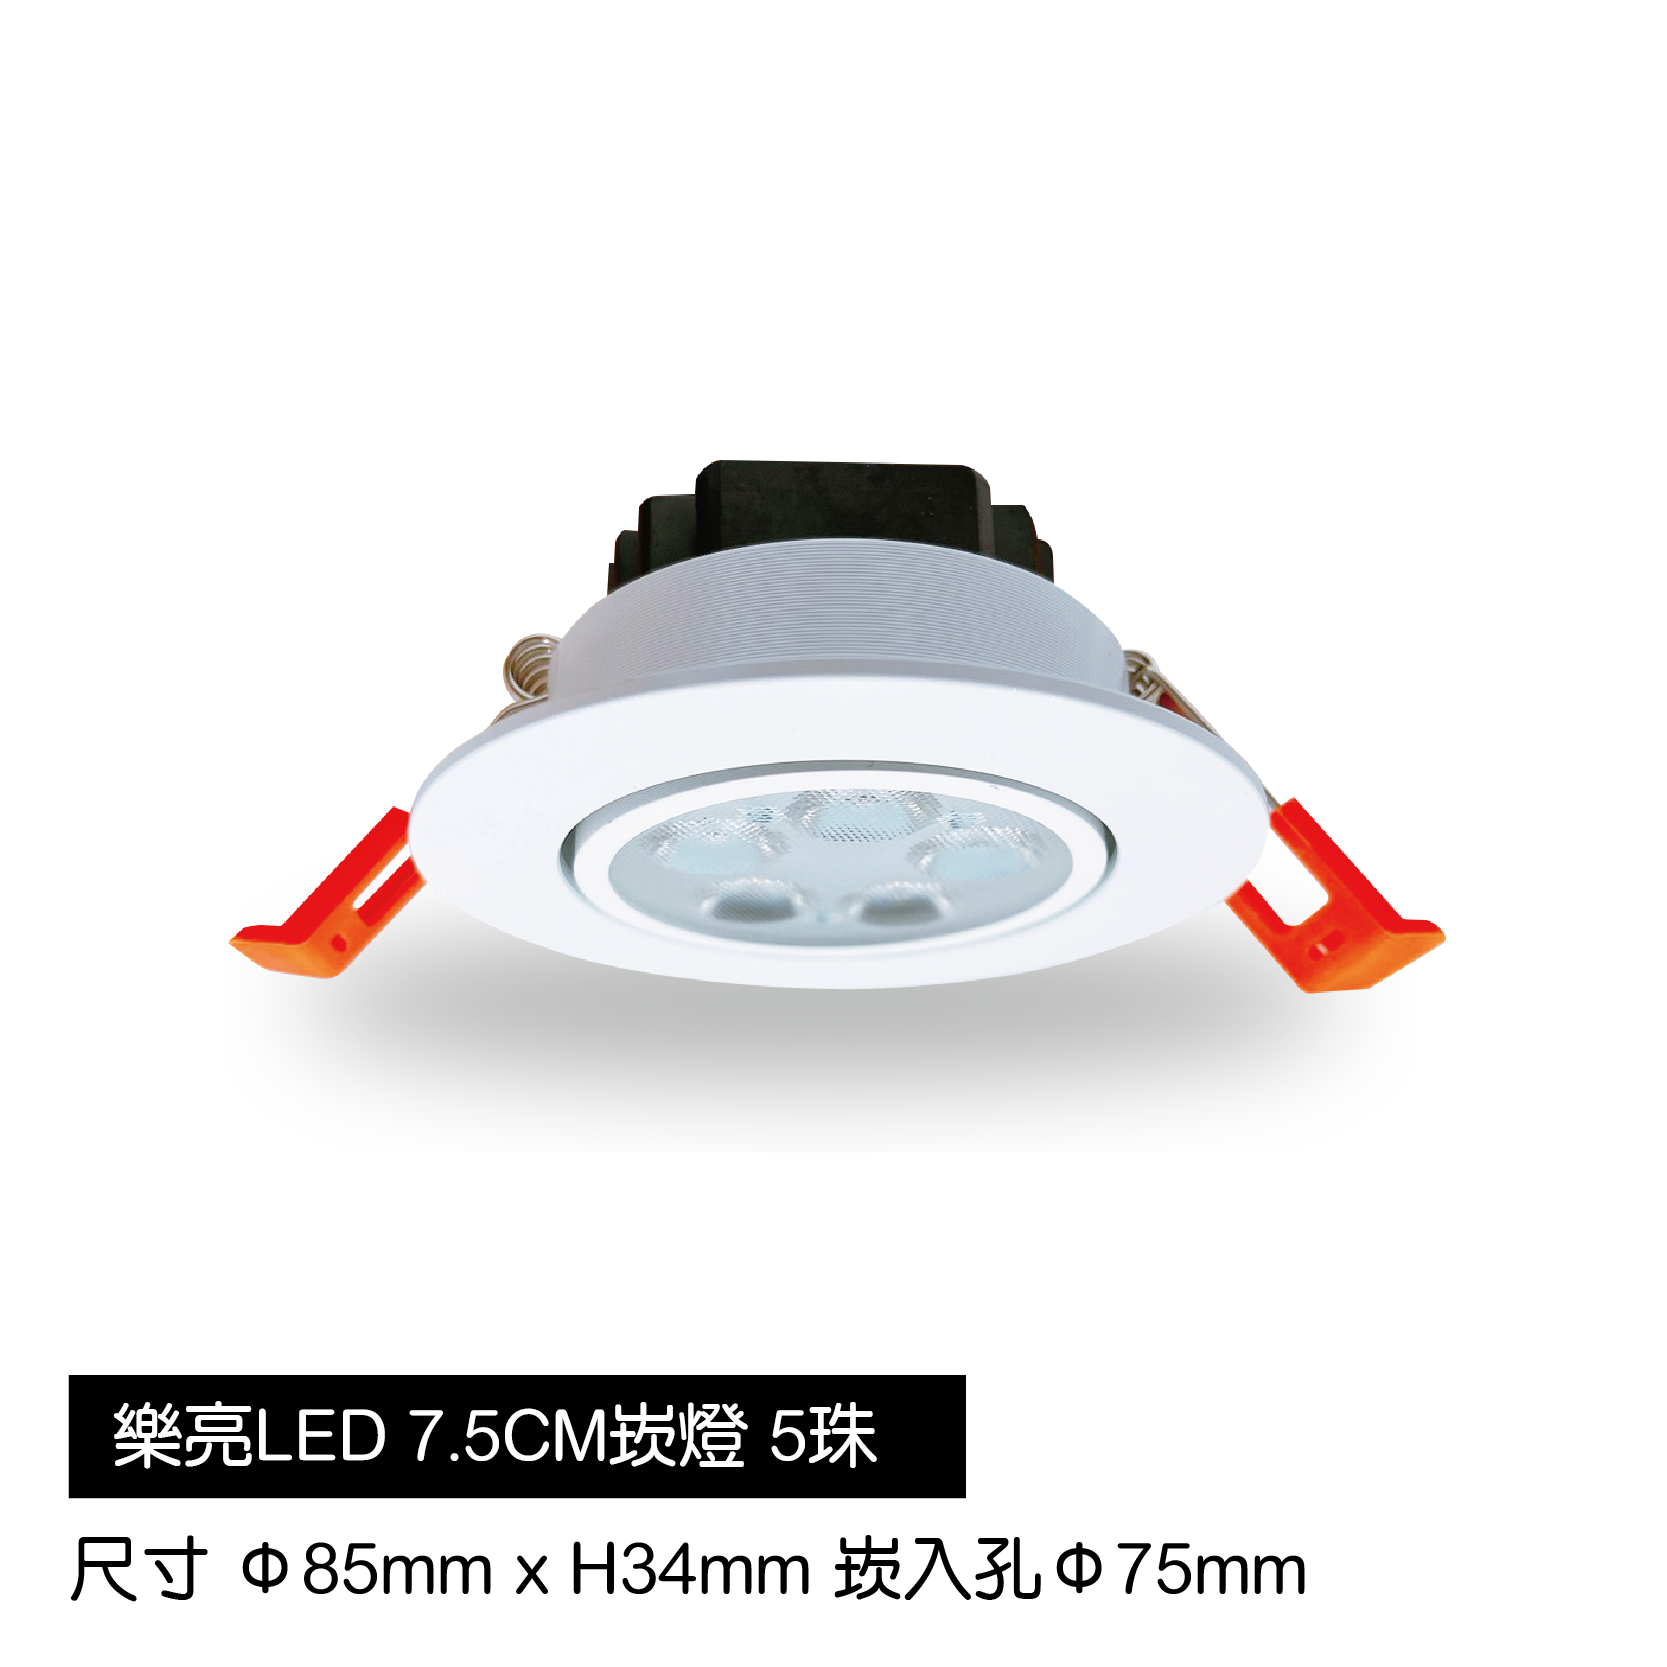 LED蜂巢7.5cm崁燈-5珠-白殼